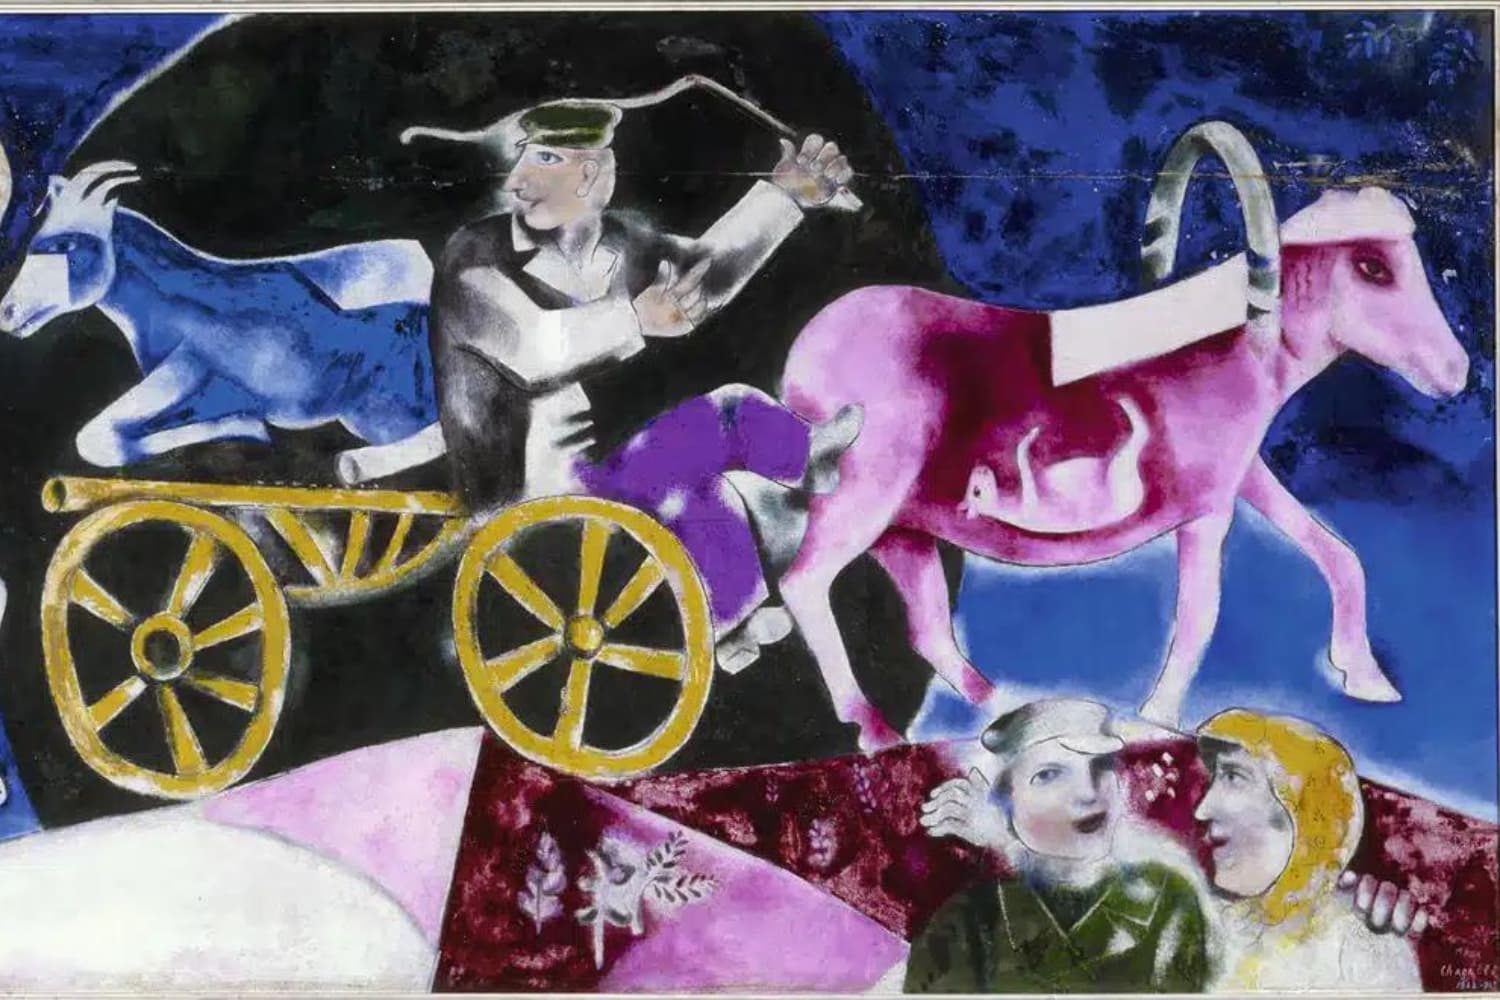 Exposición “Chagall. Un grito de libertad”